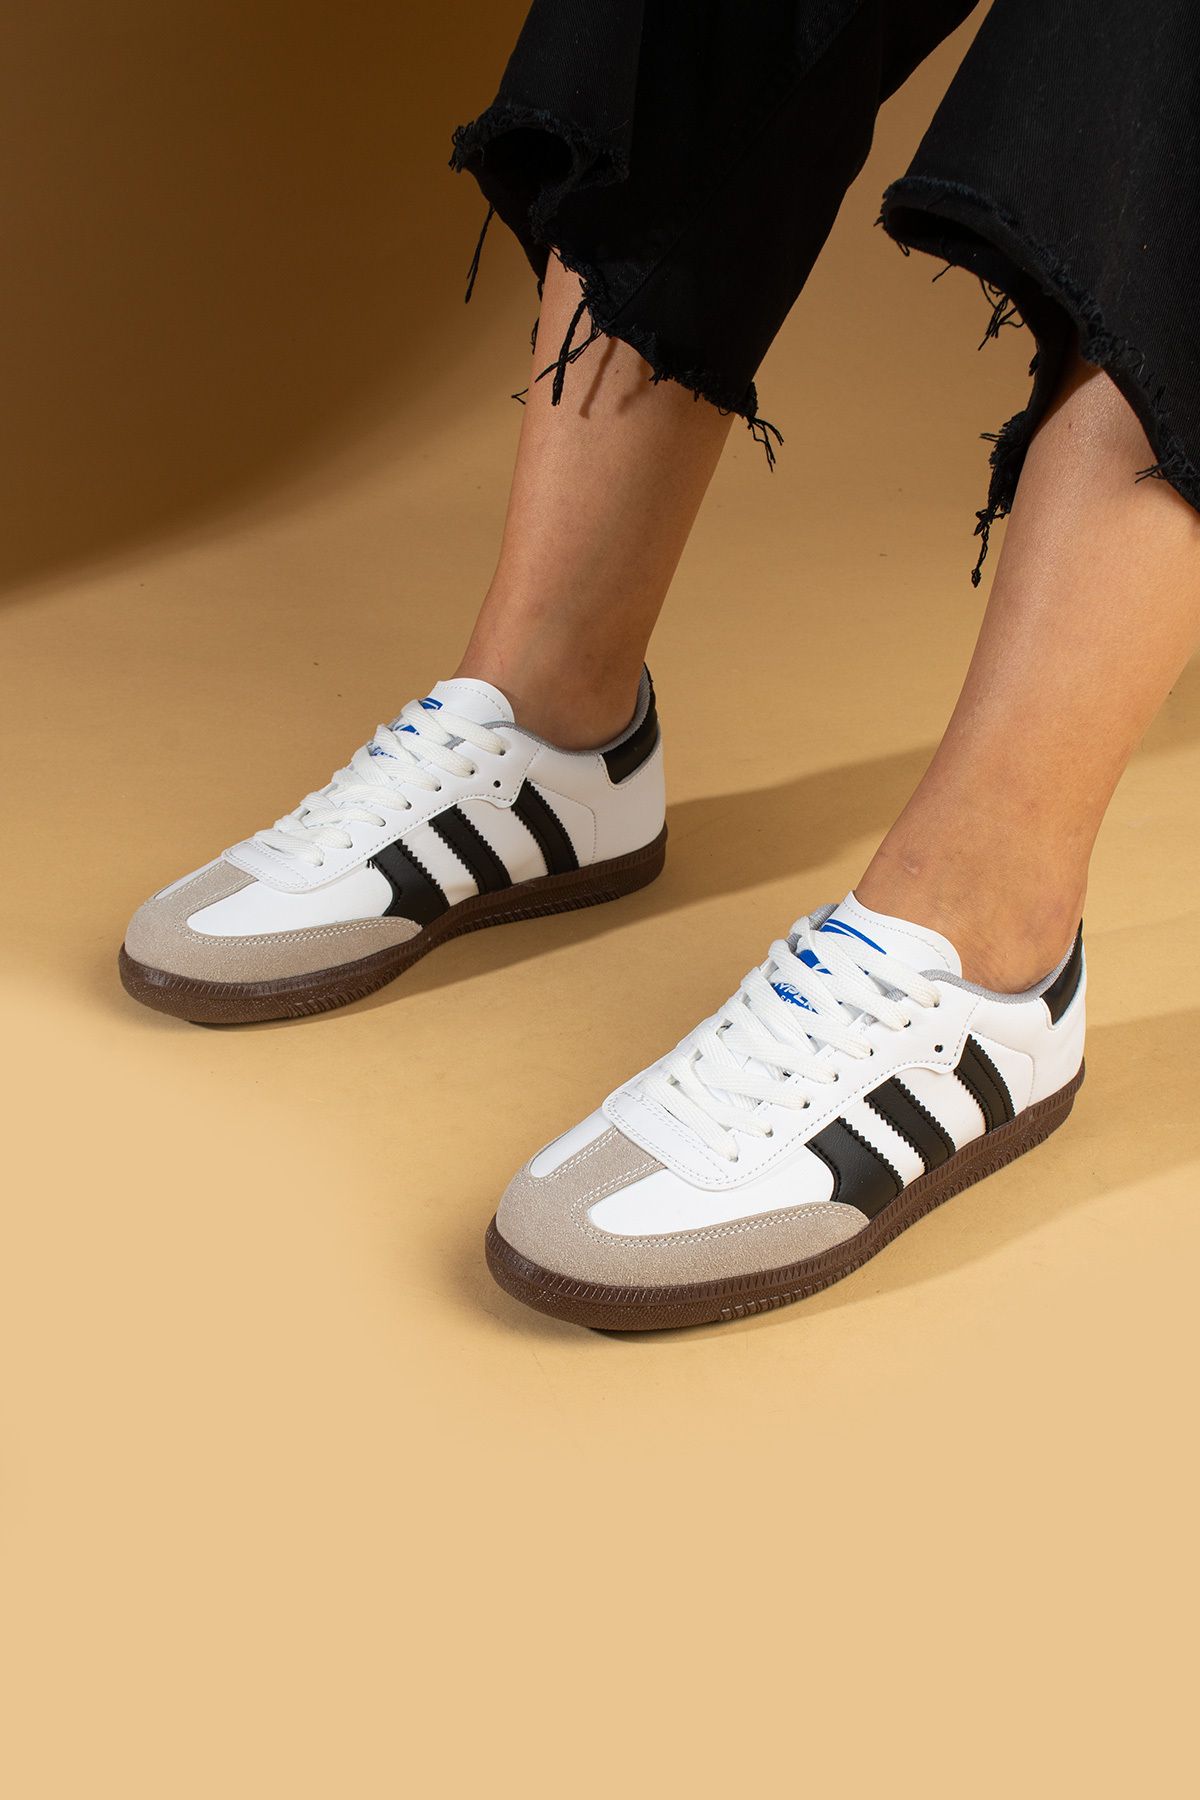 Pembe Potin Beyaz Siyah Kadın Spor Sneaker Bağcıklı Günlük Rahat Taban Ayakkabı